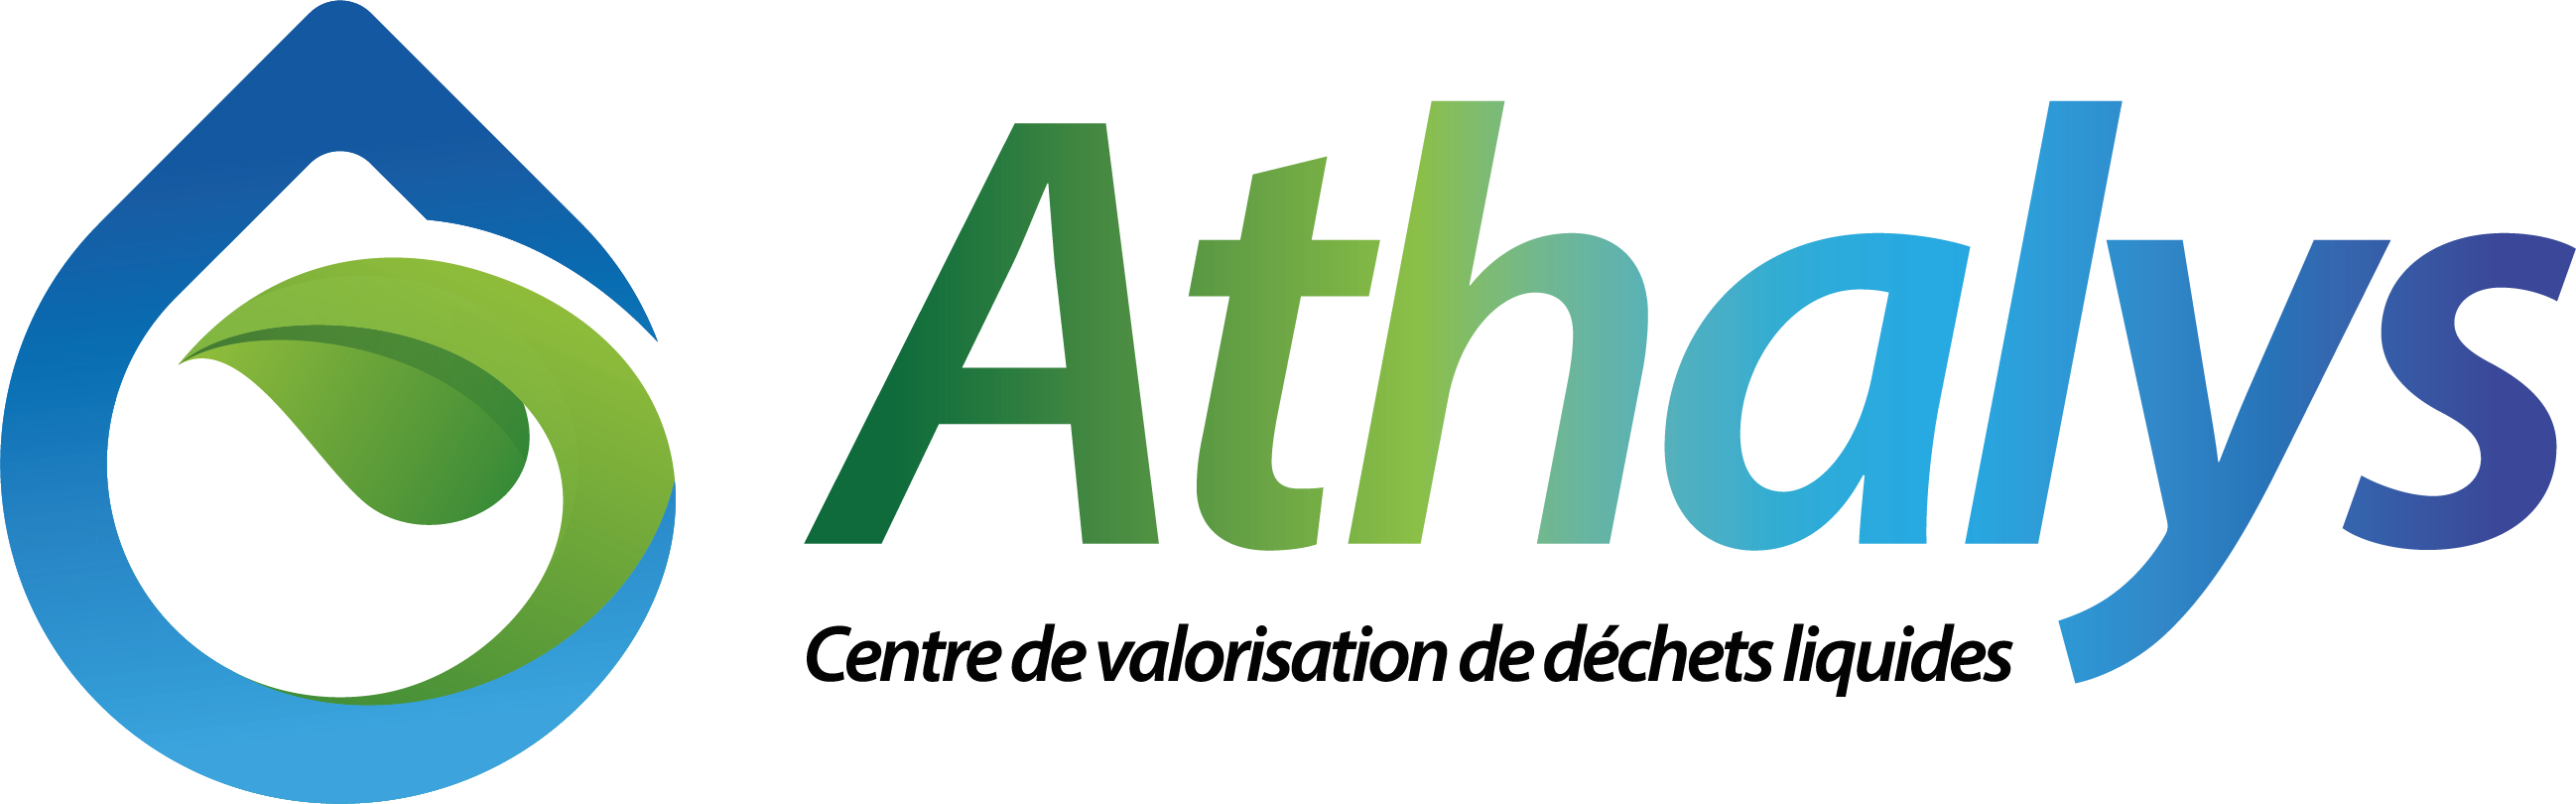 Logo Athalys - Filiale Victoria-Group, groupe indépendant spécialisé dans l'assainissement